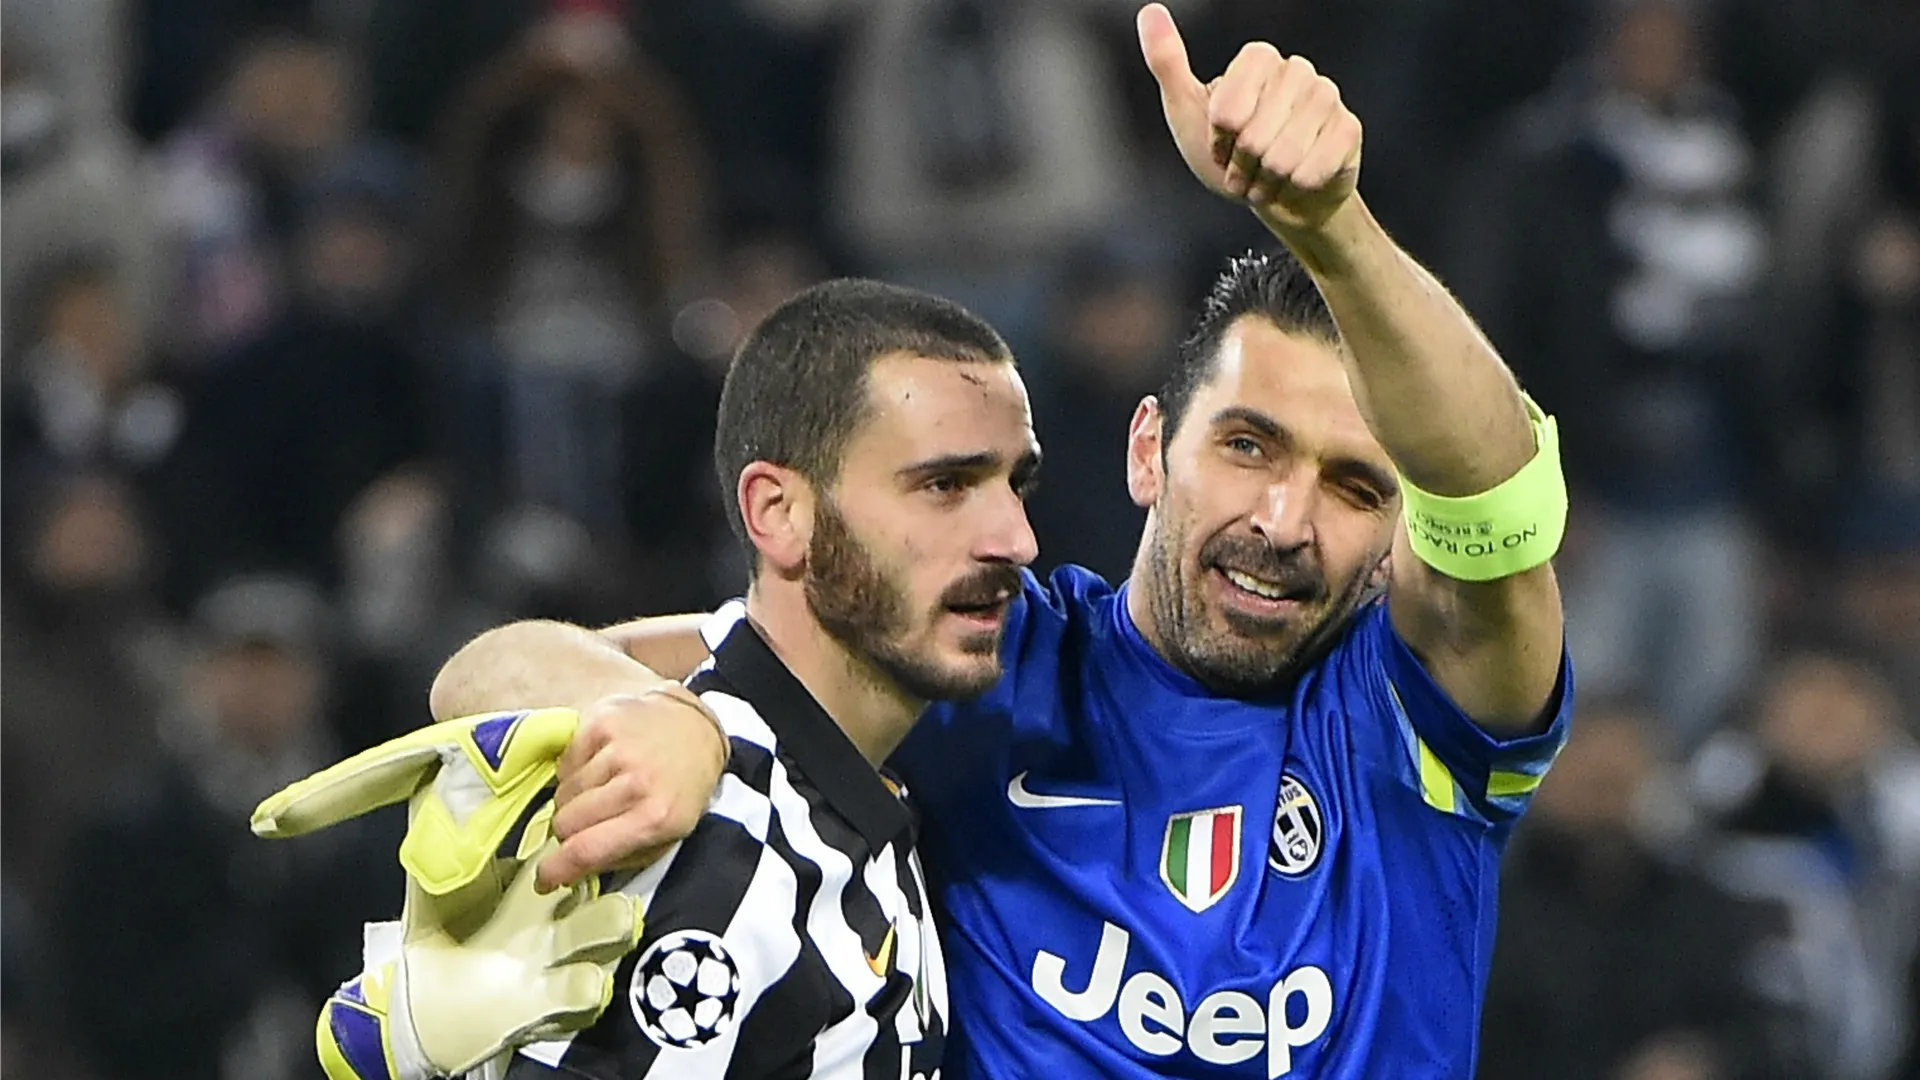 SỐC: Chỉ mình Buffon muốn Bonucci ở lại Juventus - Bóng Đá